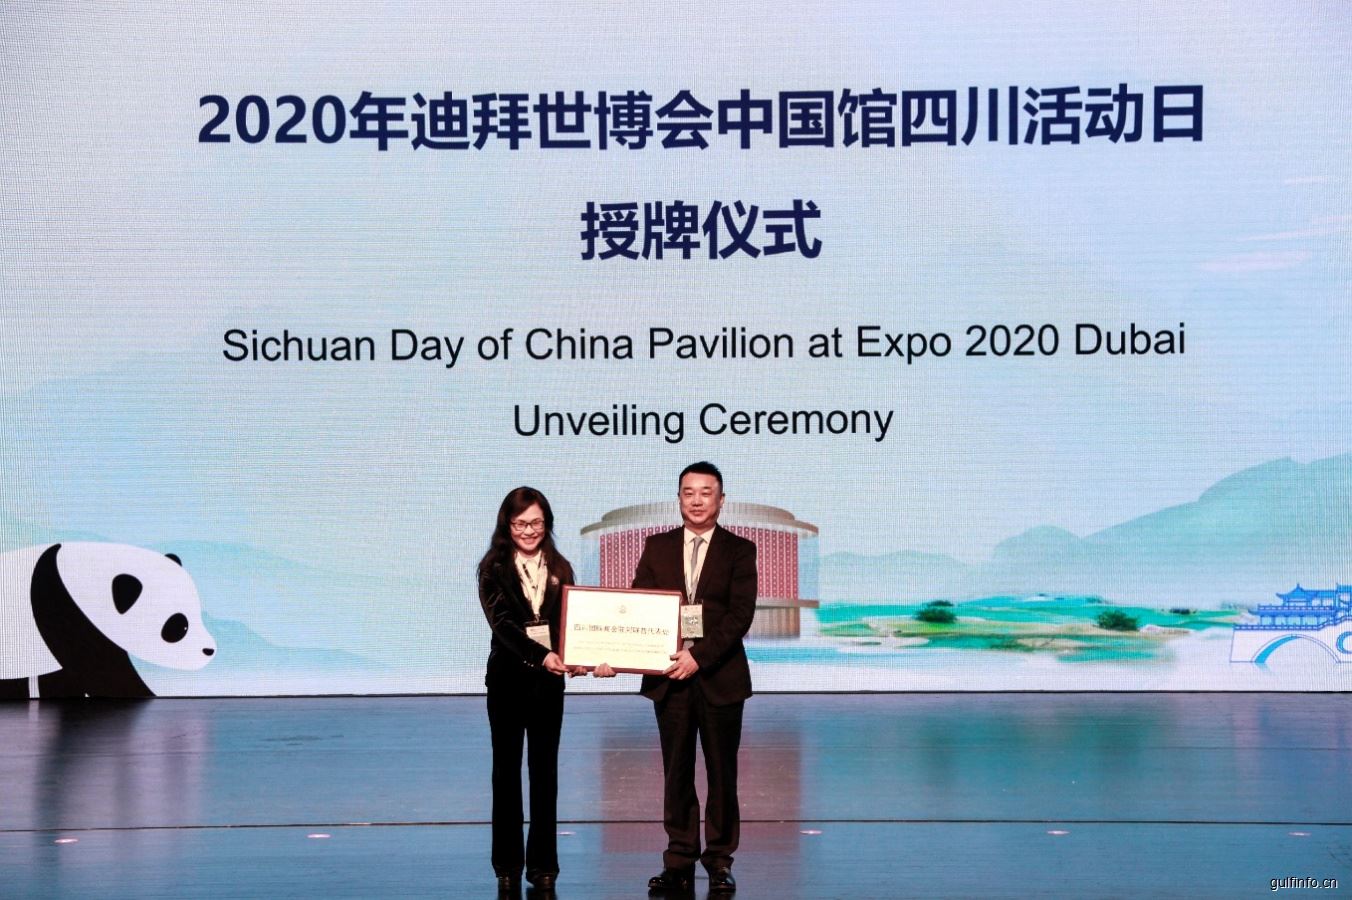 2020年迪拜世博会中国馆“四川活动日” 成功举办